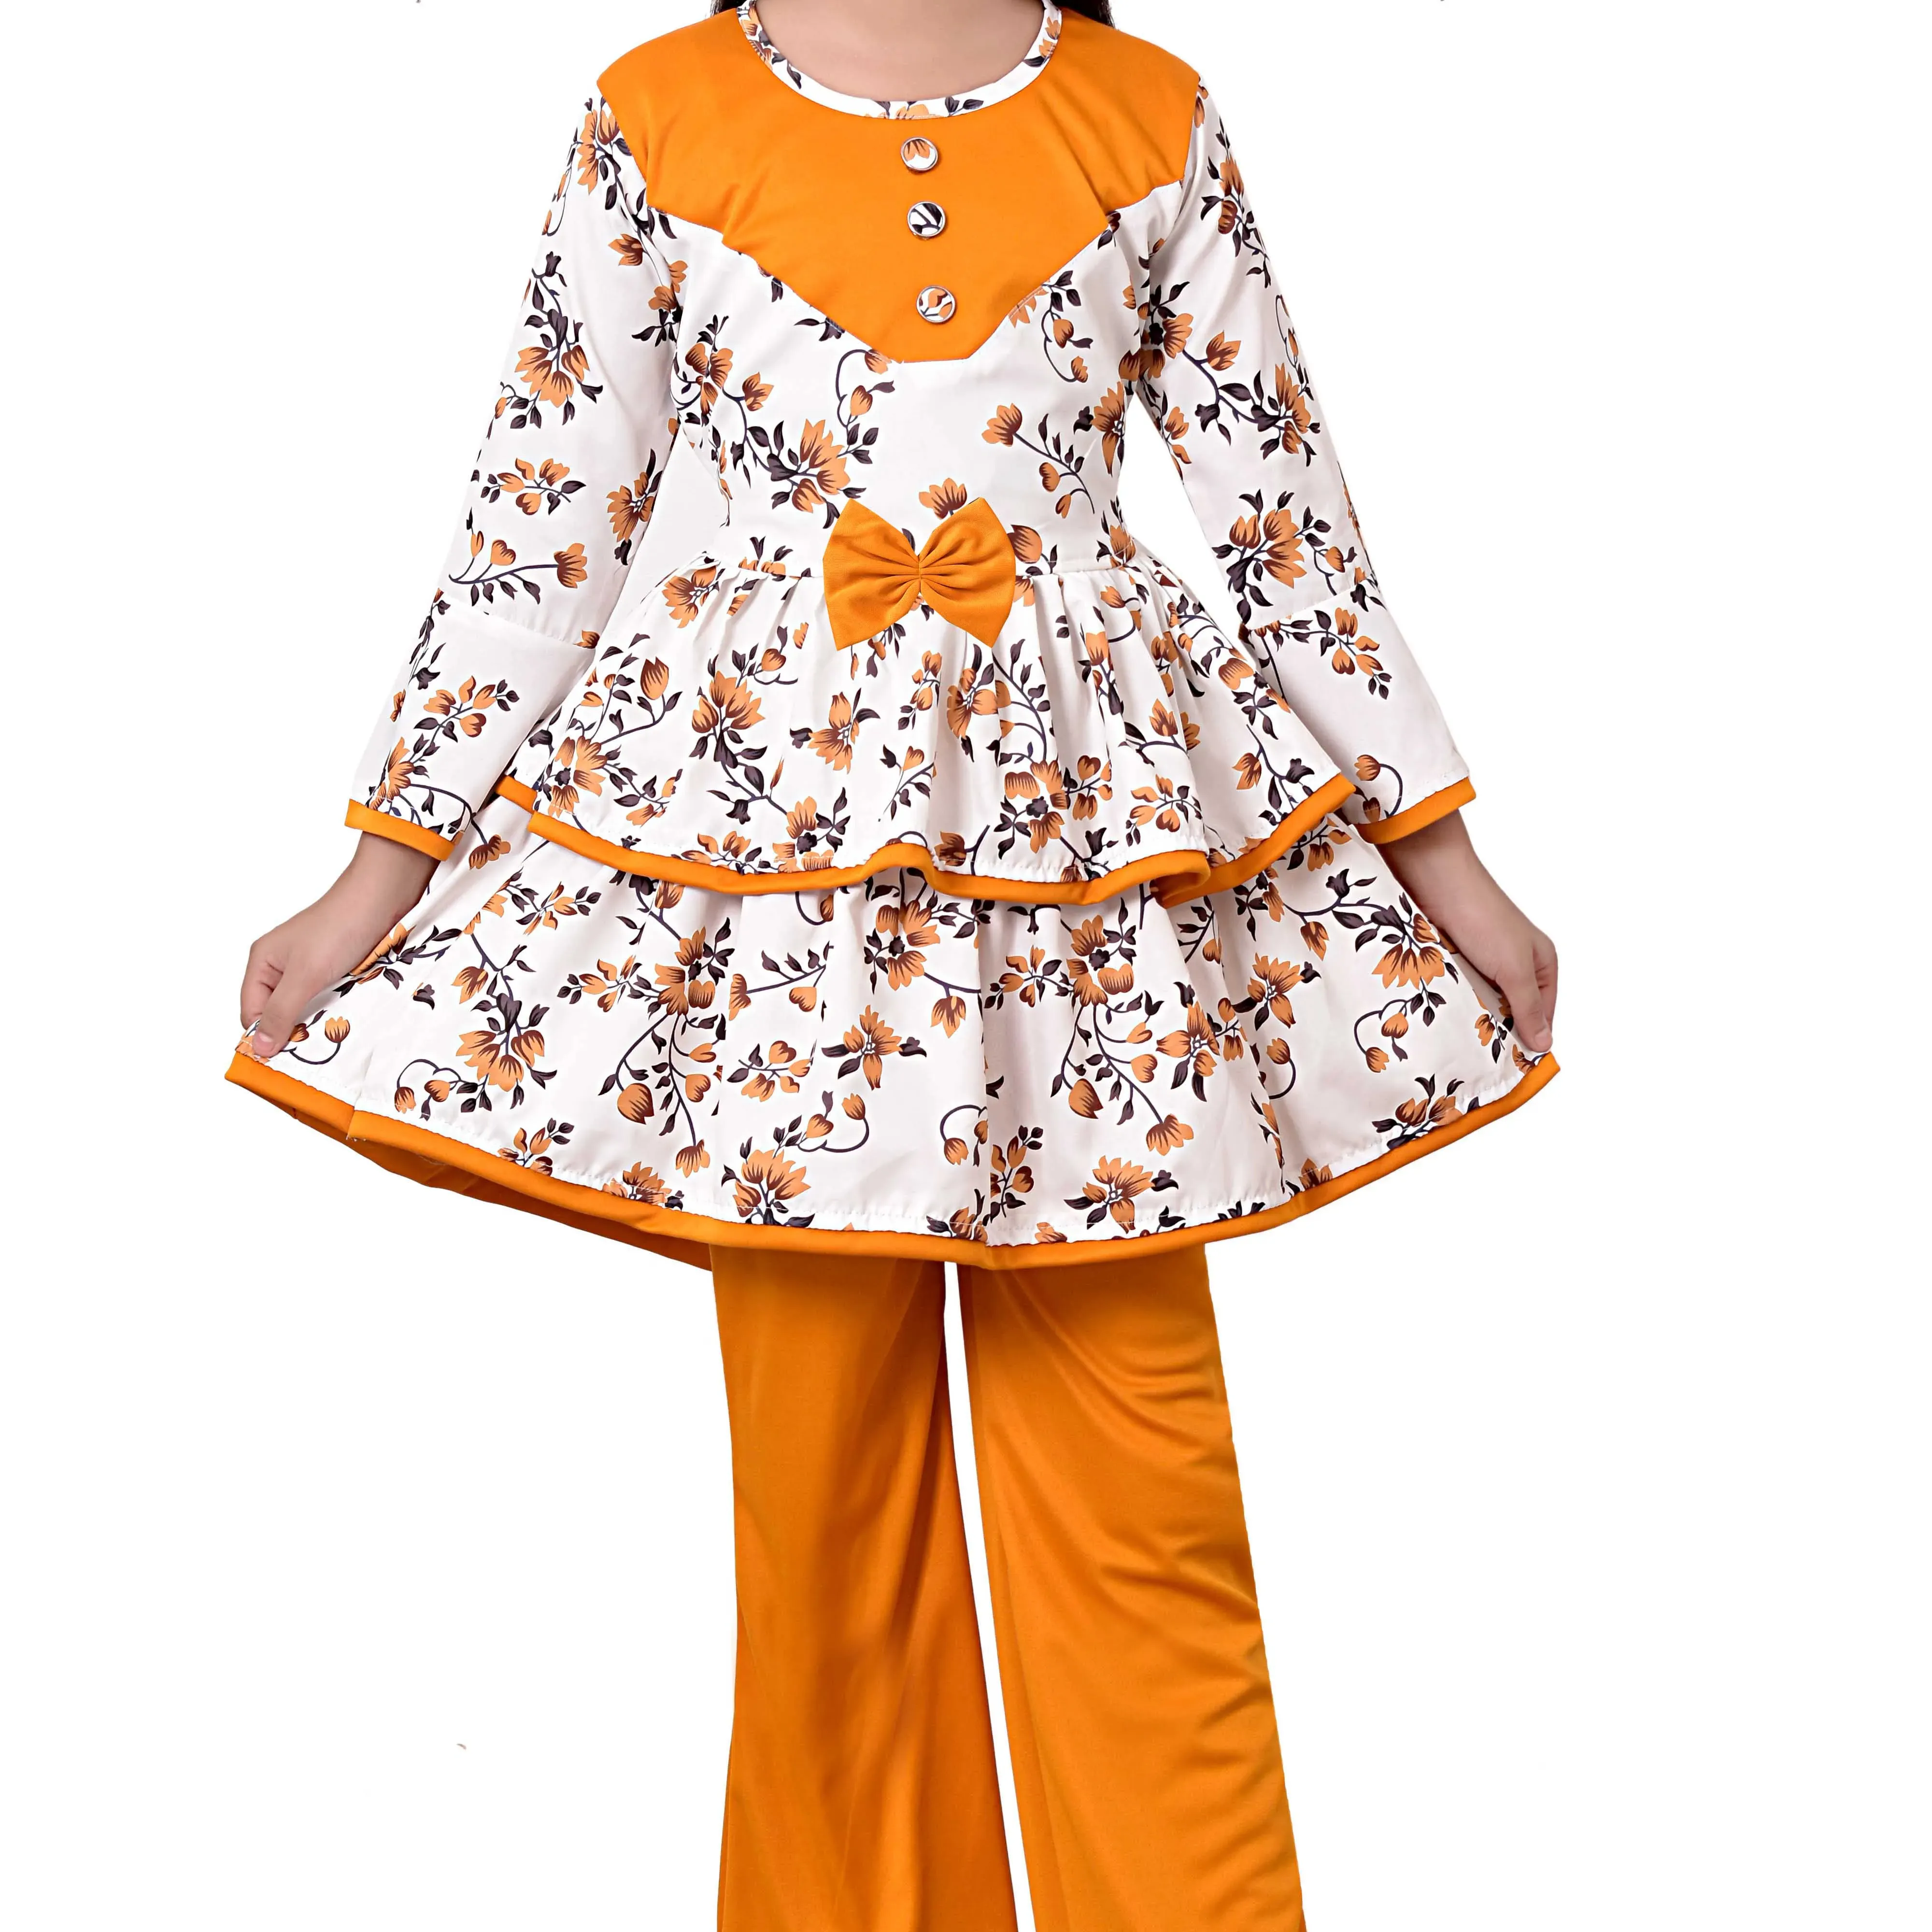 مجموعة فستان كورتيس وبالاتسو مزيج قطن مطبوع عليه أزهار للفتيات من 3-10 سنوات جودة عالية متطلبات عالية منتج صنع في الهند